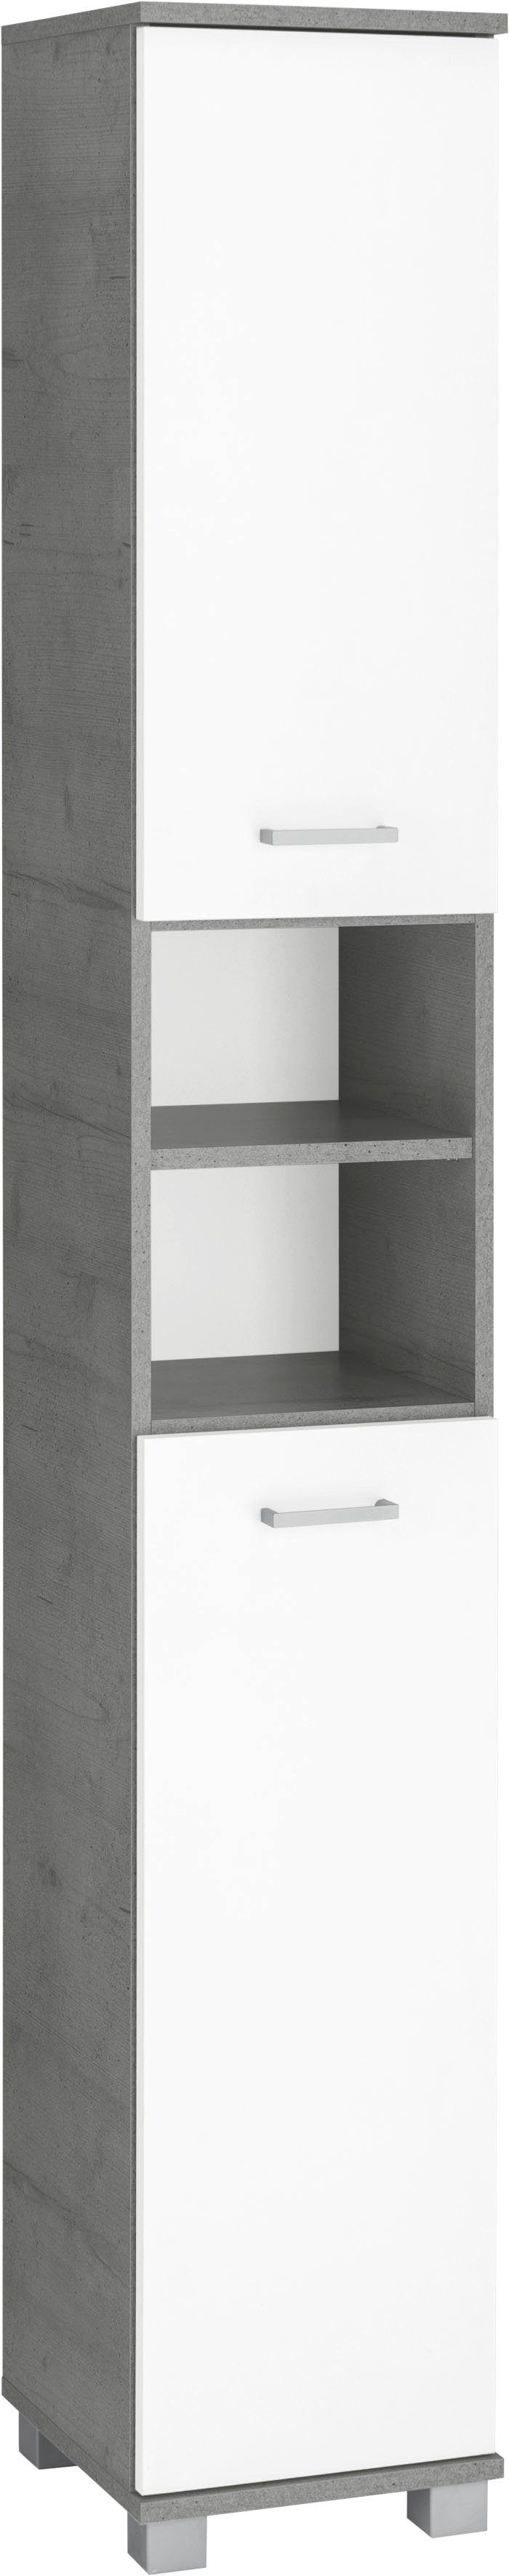 Schildmeyer Hoge kast Mobes Breedte x hoogte: 30,3x193,7 cm, deuren aan beide kanten te monteren, badkamerkast met praktische schappen en planken achter de deuren